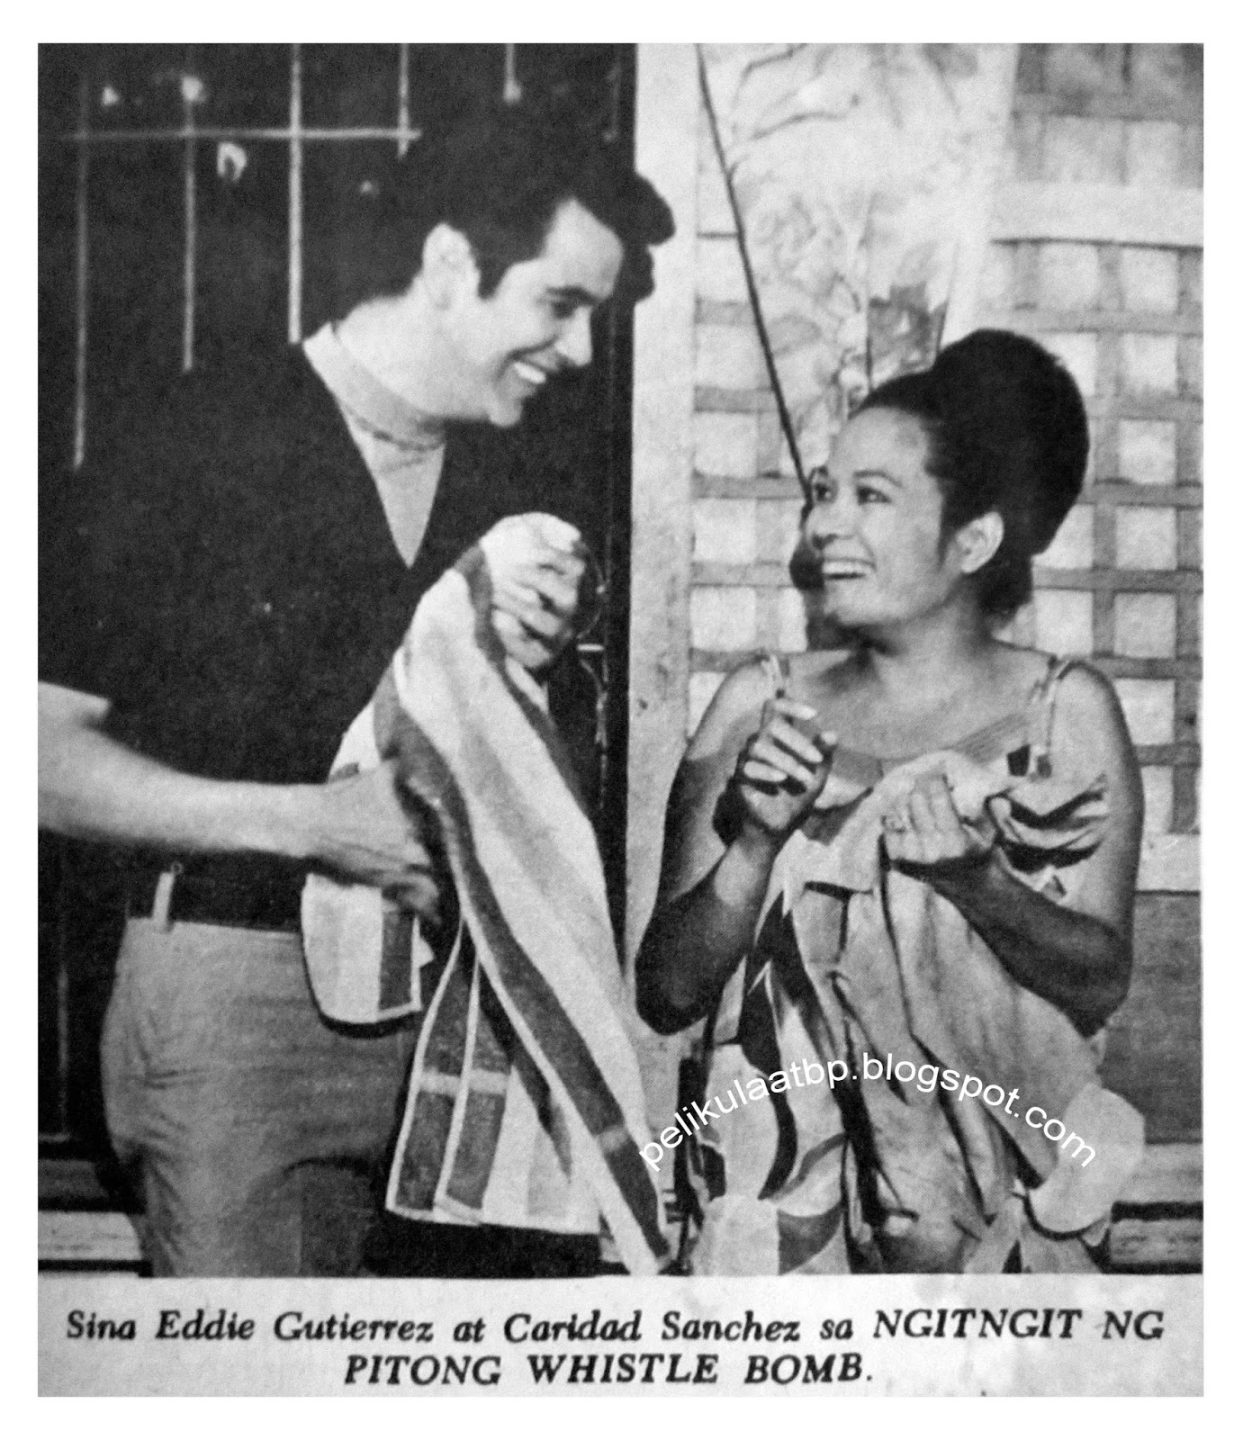 Caridad Sanchez with Eddie Guttierez in Ngitngit Ng Whistle Bomb Photo from Pelikula Atbp.